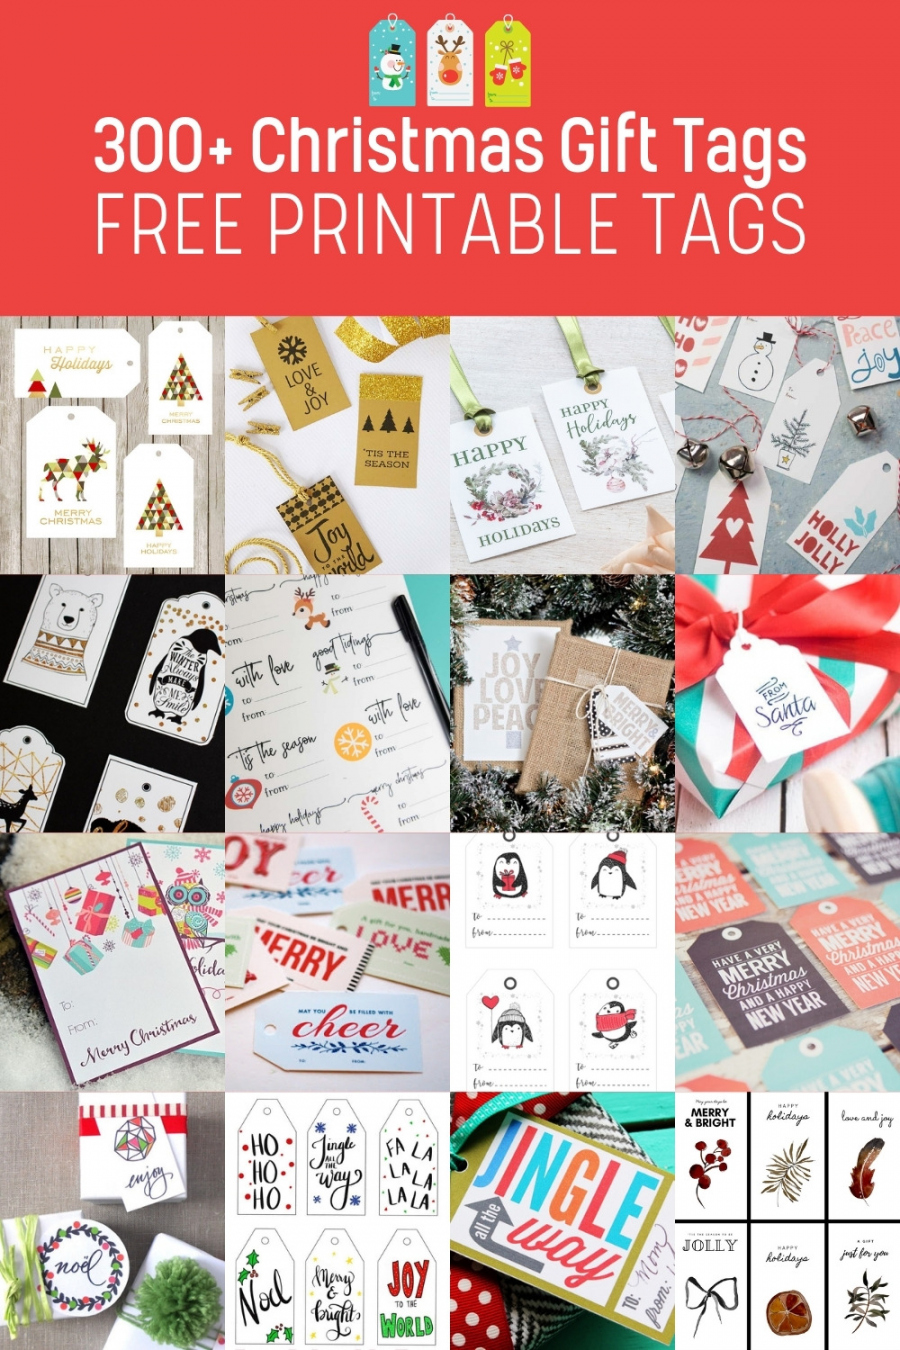 Christmas Gift Tags Free Printable - Printable - + Printable Christmas Tags for Your Gifts - DIY Candy